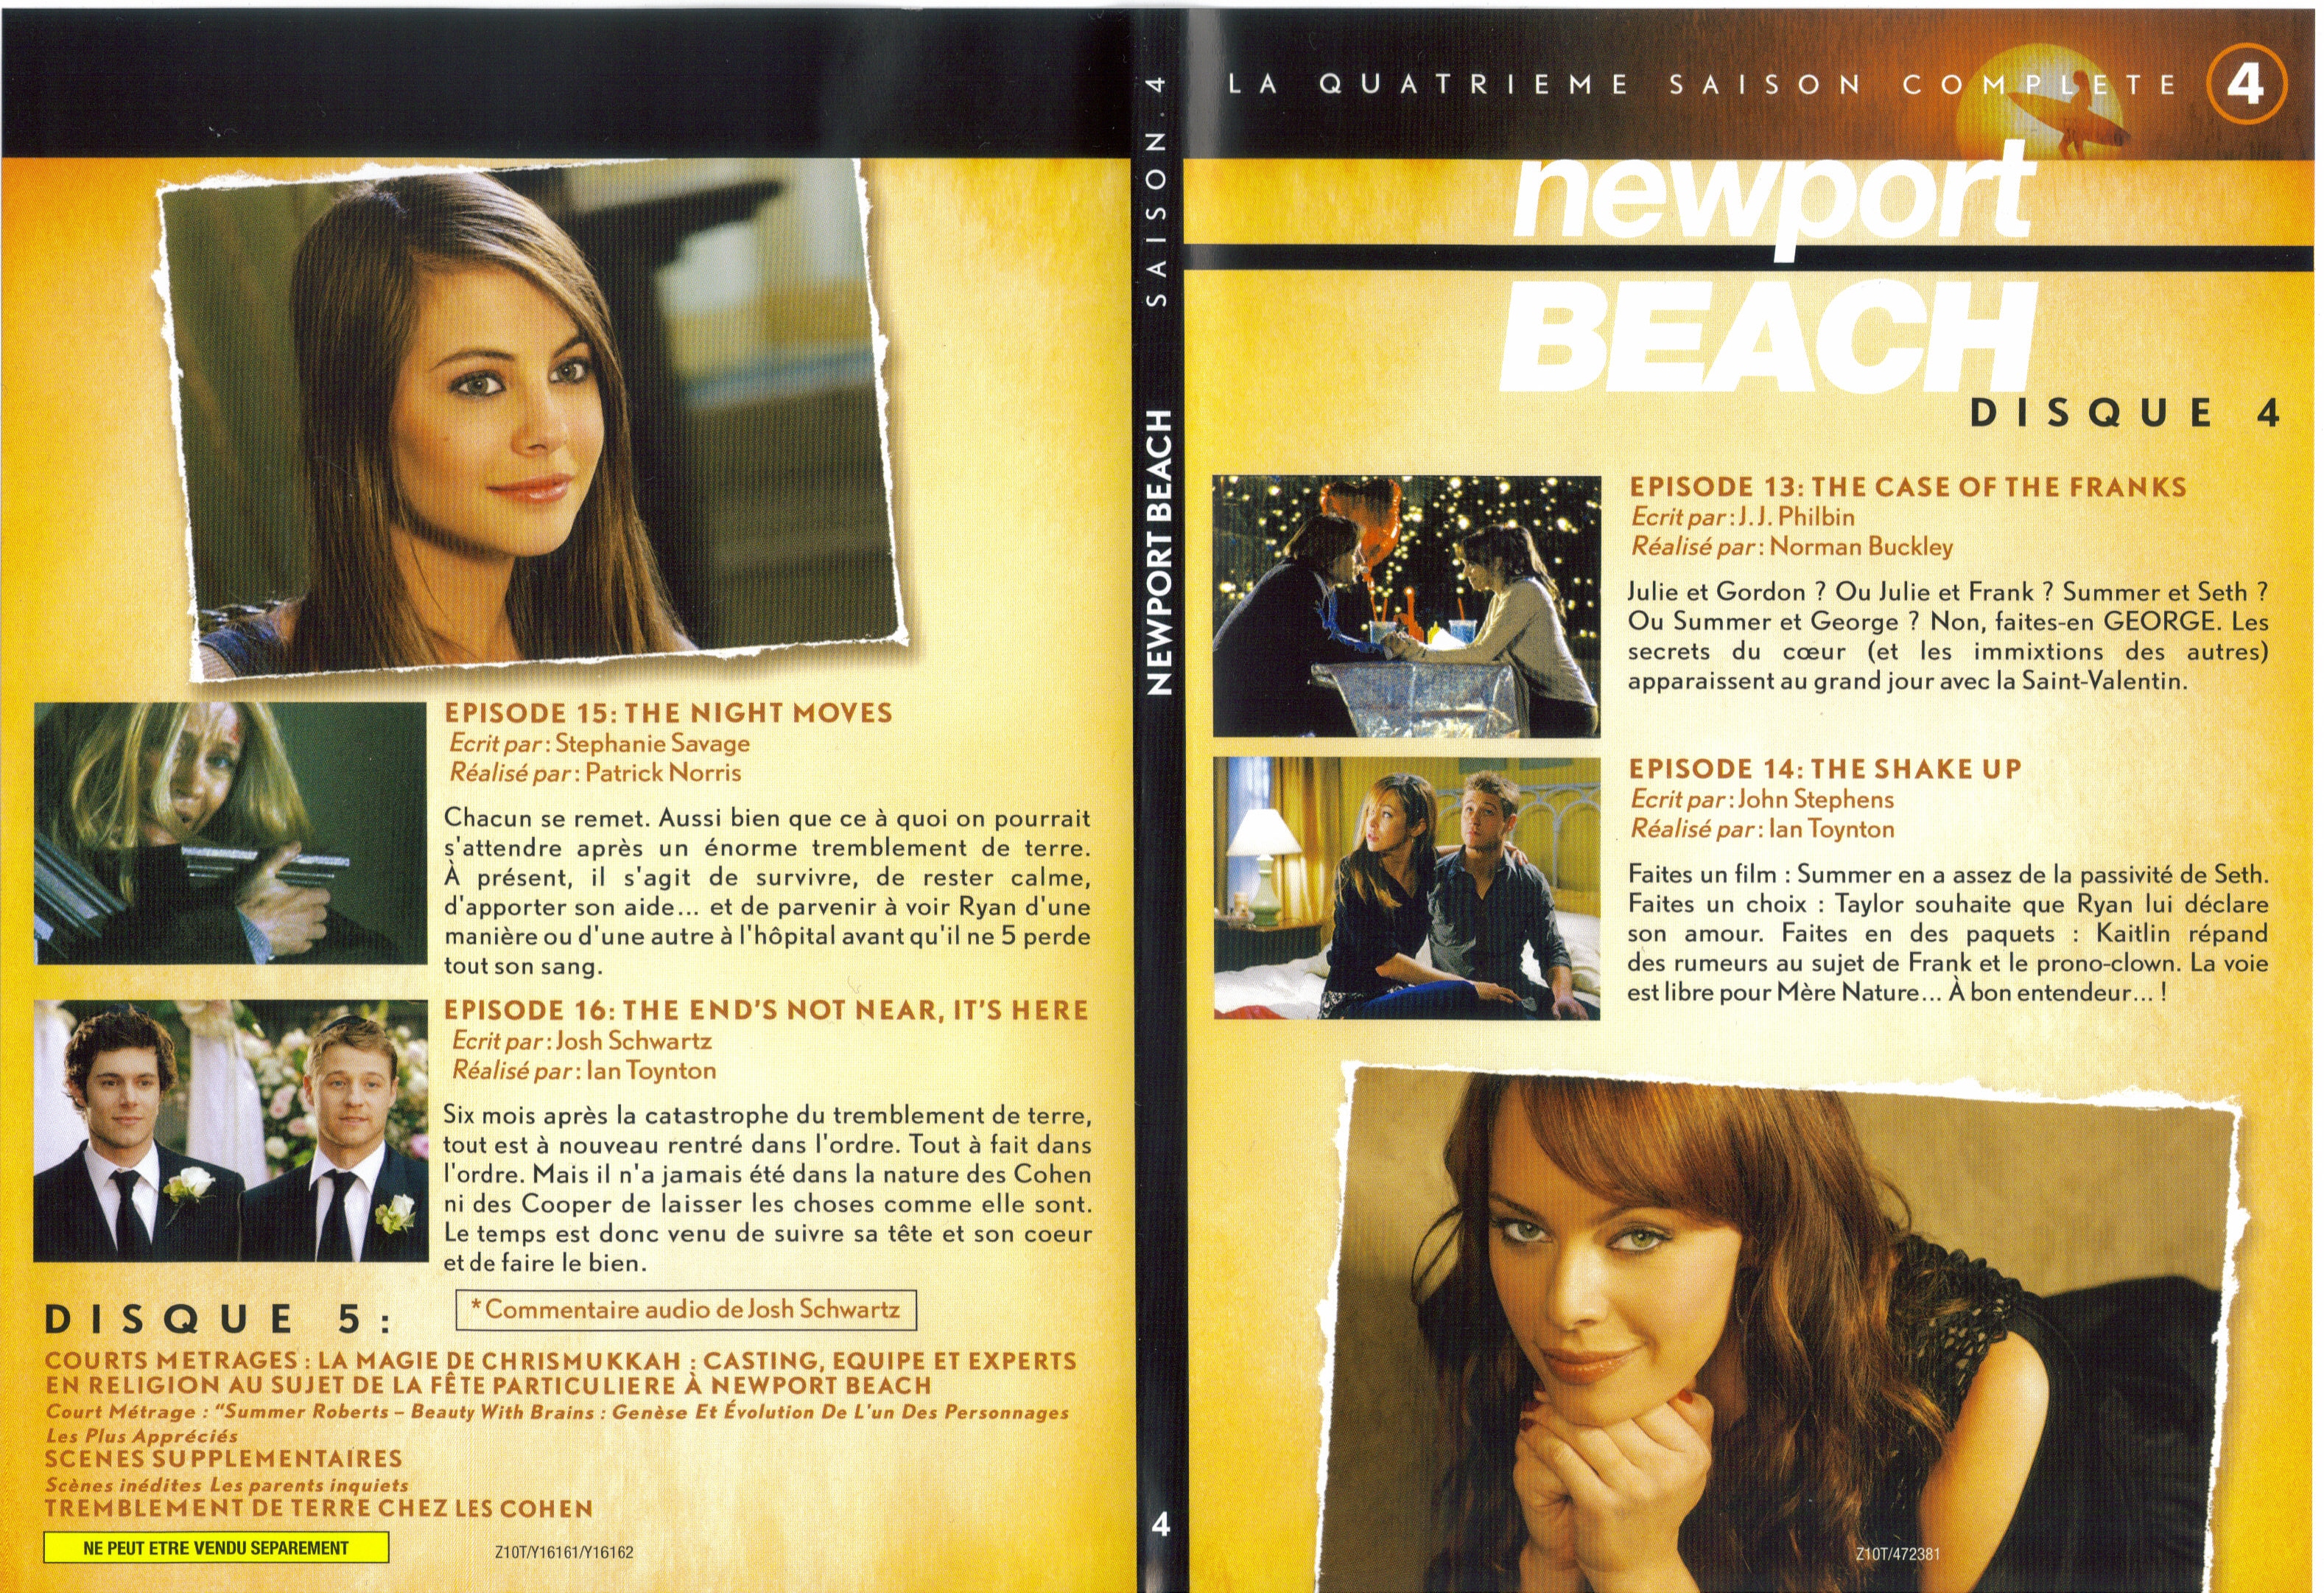 Jaquette DVD Newport Beach saison 4 vol 4